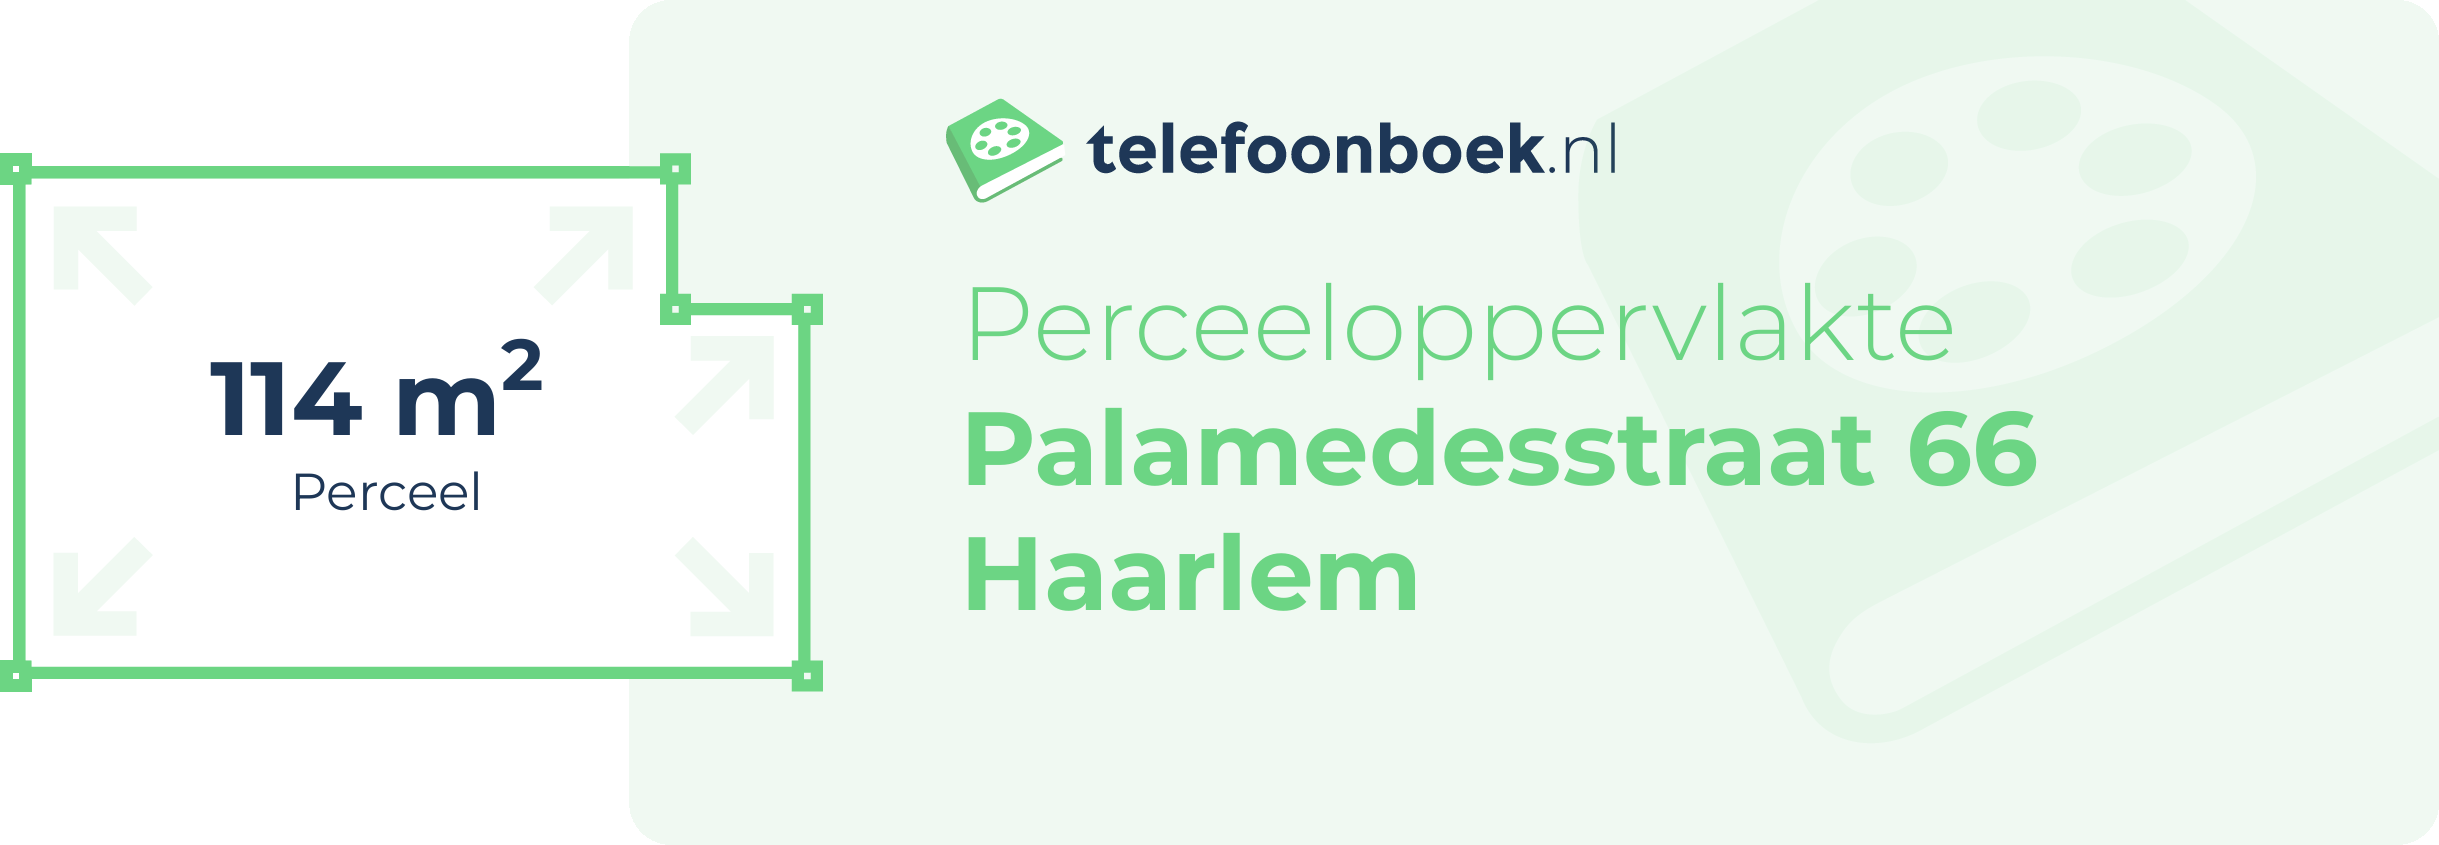 Perceeloppervlakte Palamedesstraat 66 Haarlem